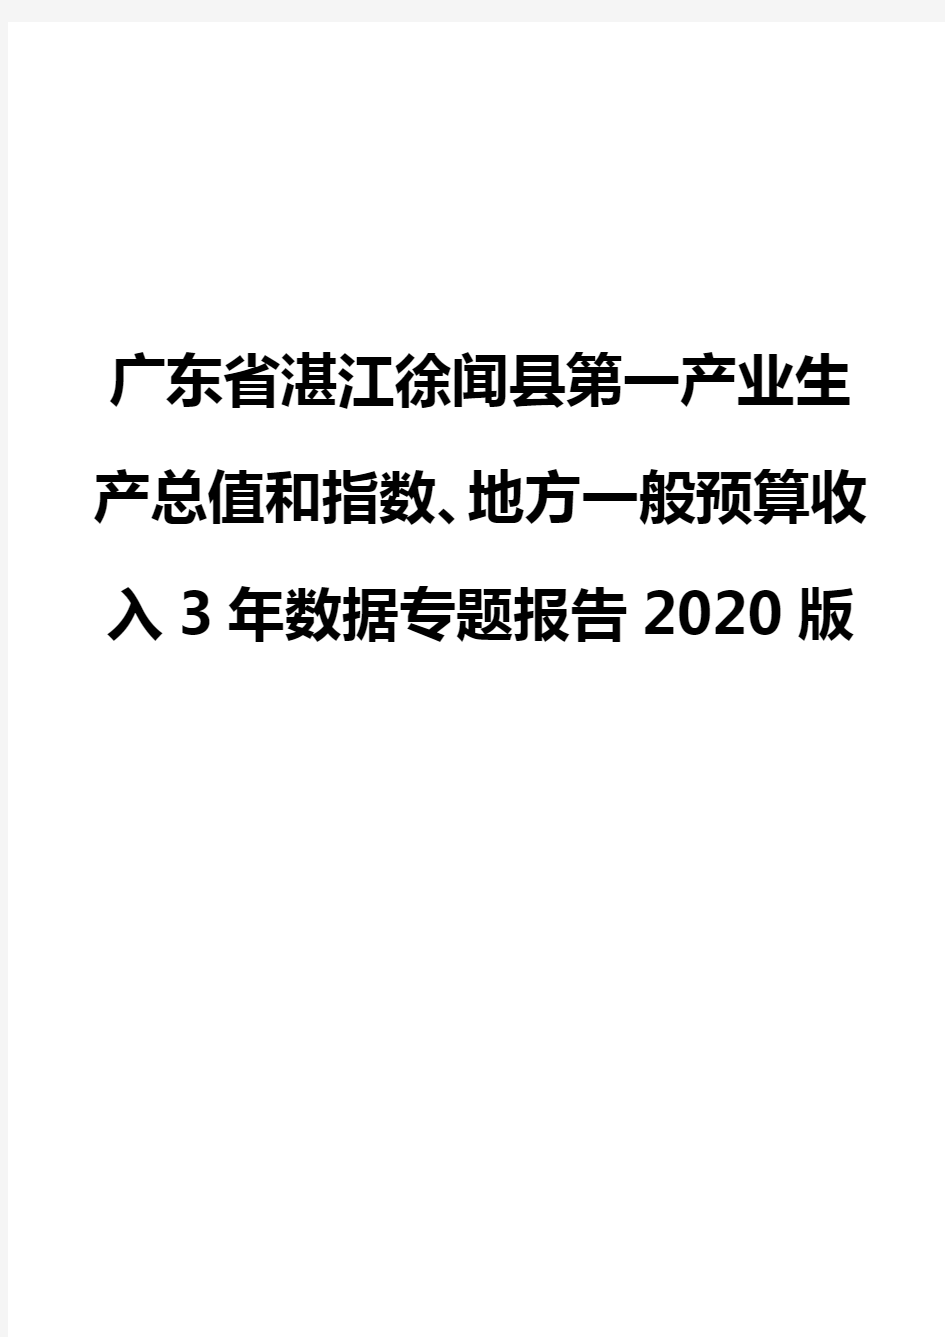 广东省湛江徐闻县第一产业生产总值和指数、地方一般预算收入3年数据专题报告2020版